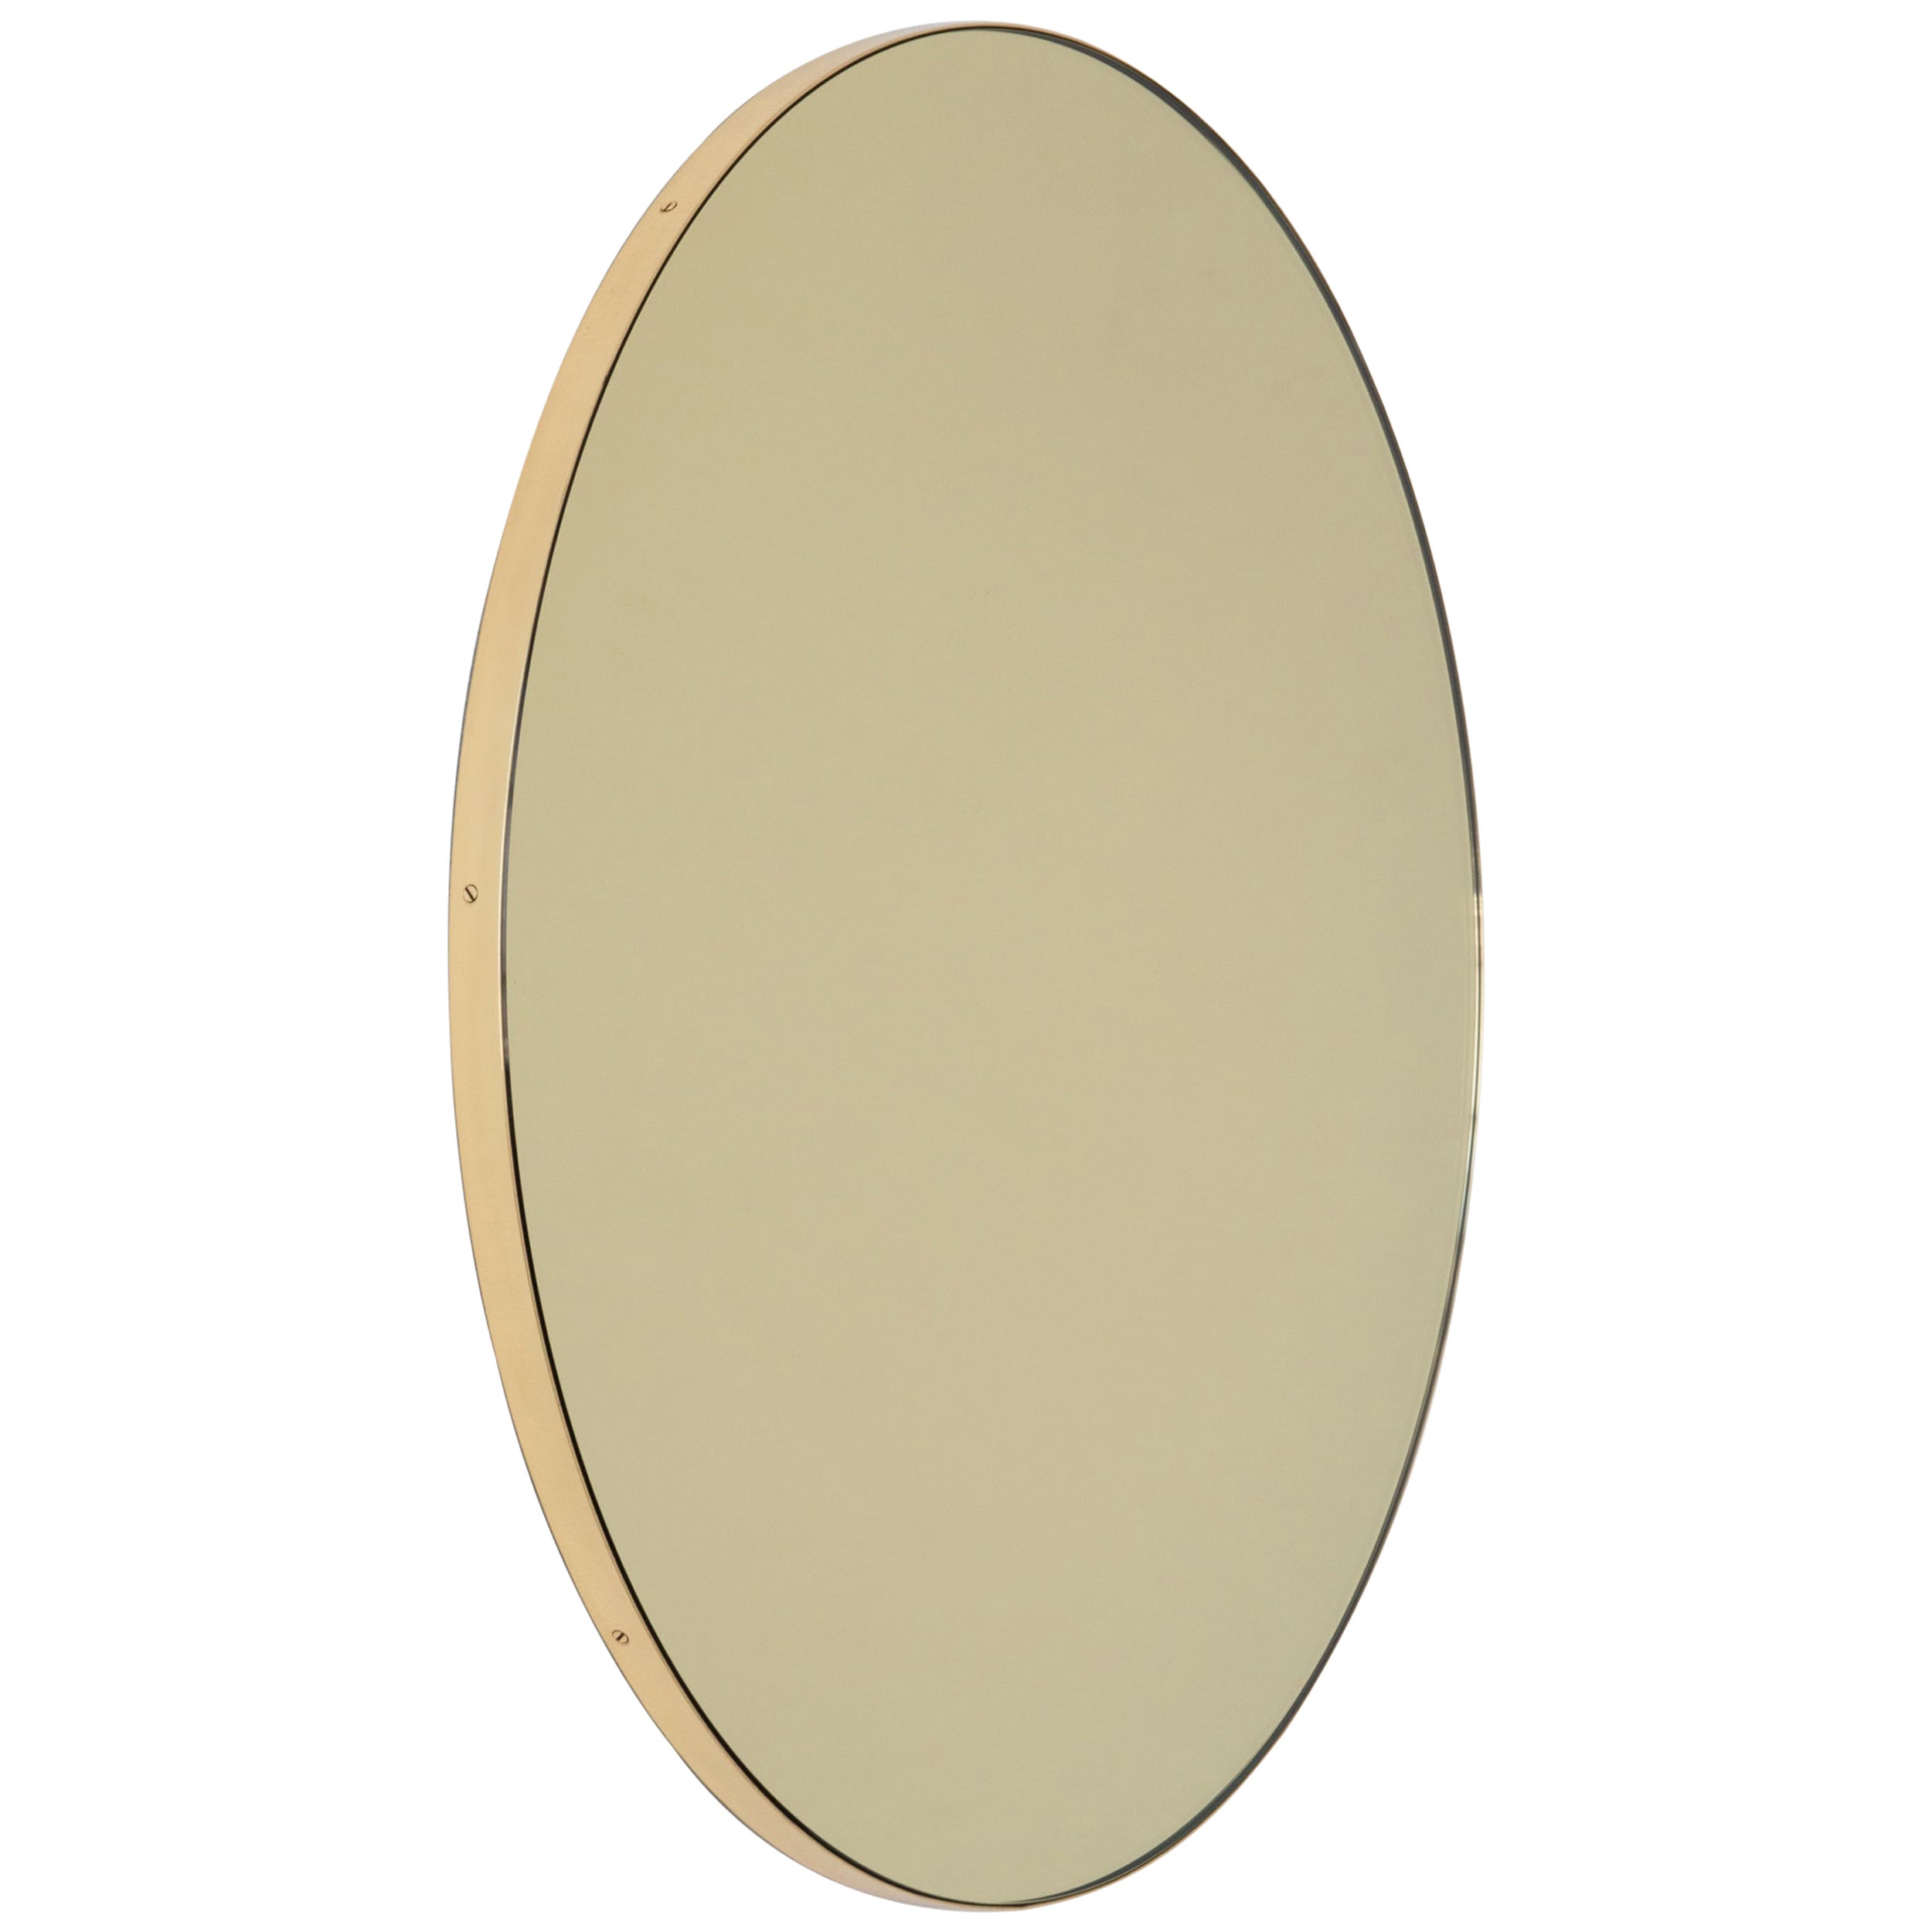 En stock, miroir contemporain rond Orbis teinté or, cadre en laiton, moyen